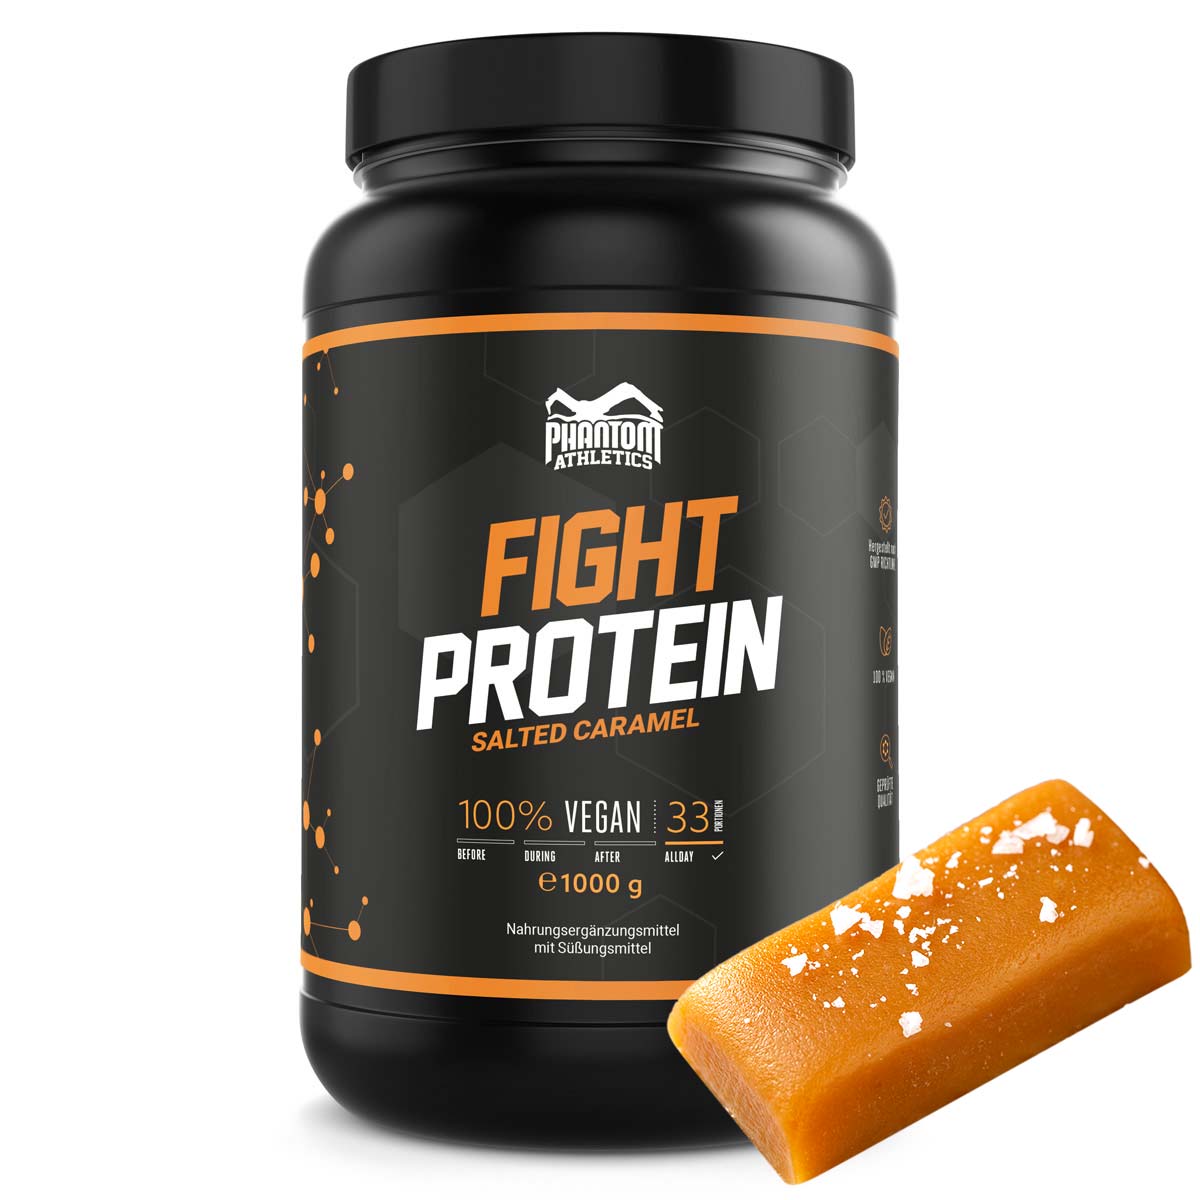 Phantom FIGHT Protein für Kampfsportler mit Salted Karamell Geschmack.